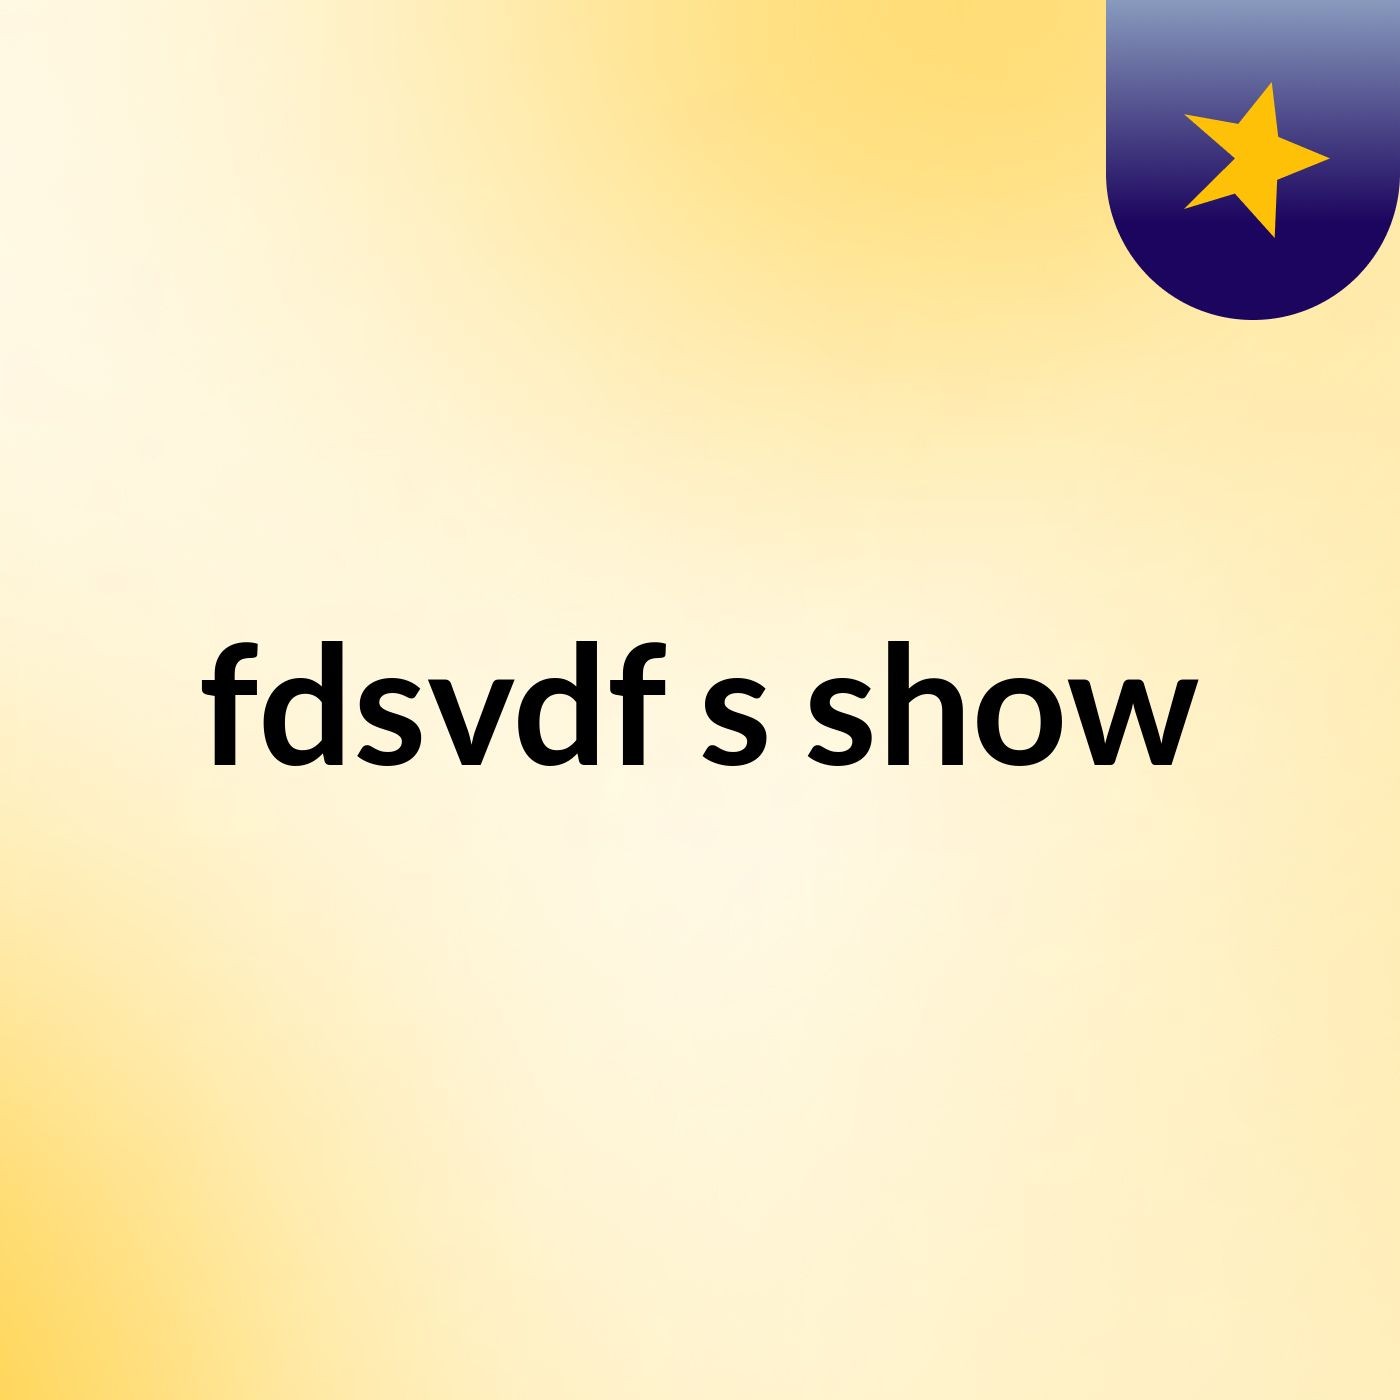 fdsvdf's show